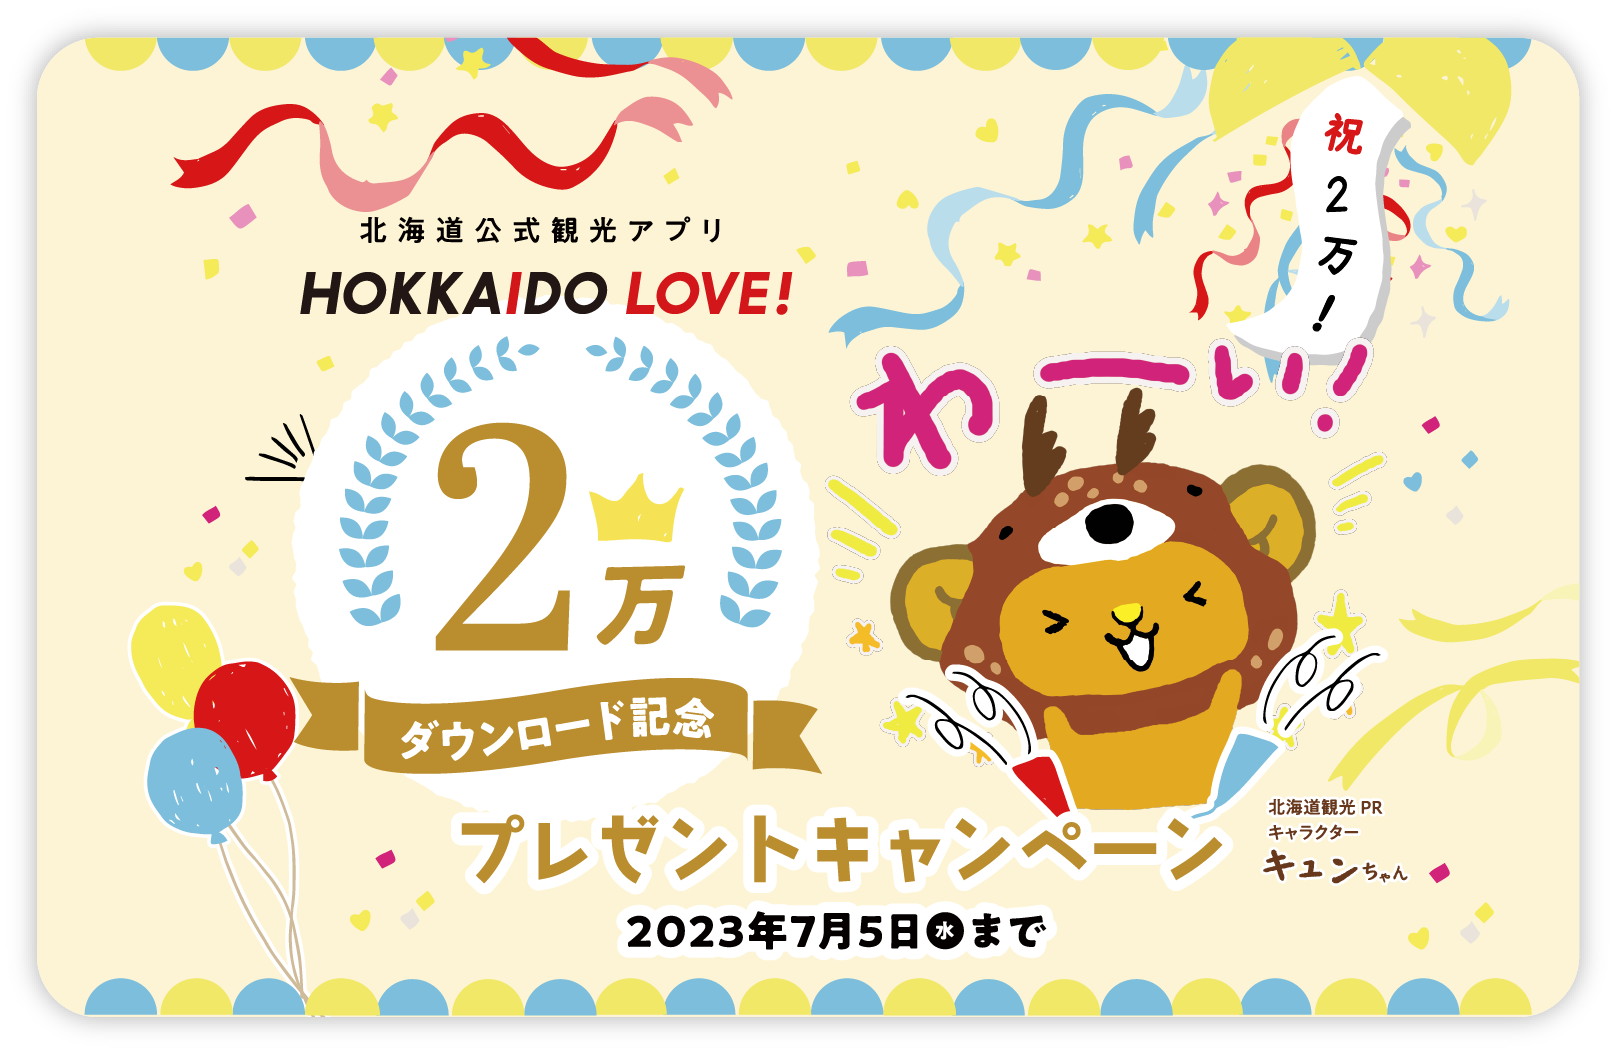 2万ダウンロード記念してプレゼントキャンペーンを開催! | HOKKAIDO LOVE! | 北海道公式観光アプリ